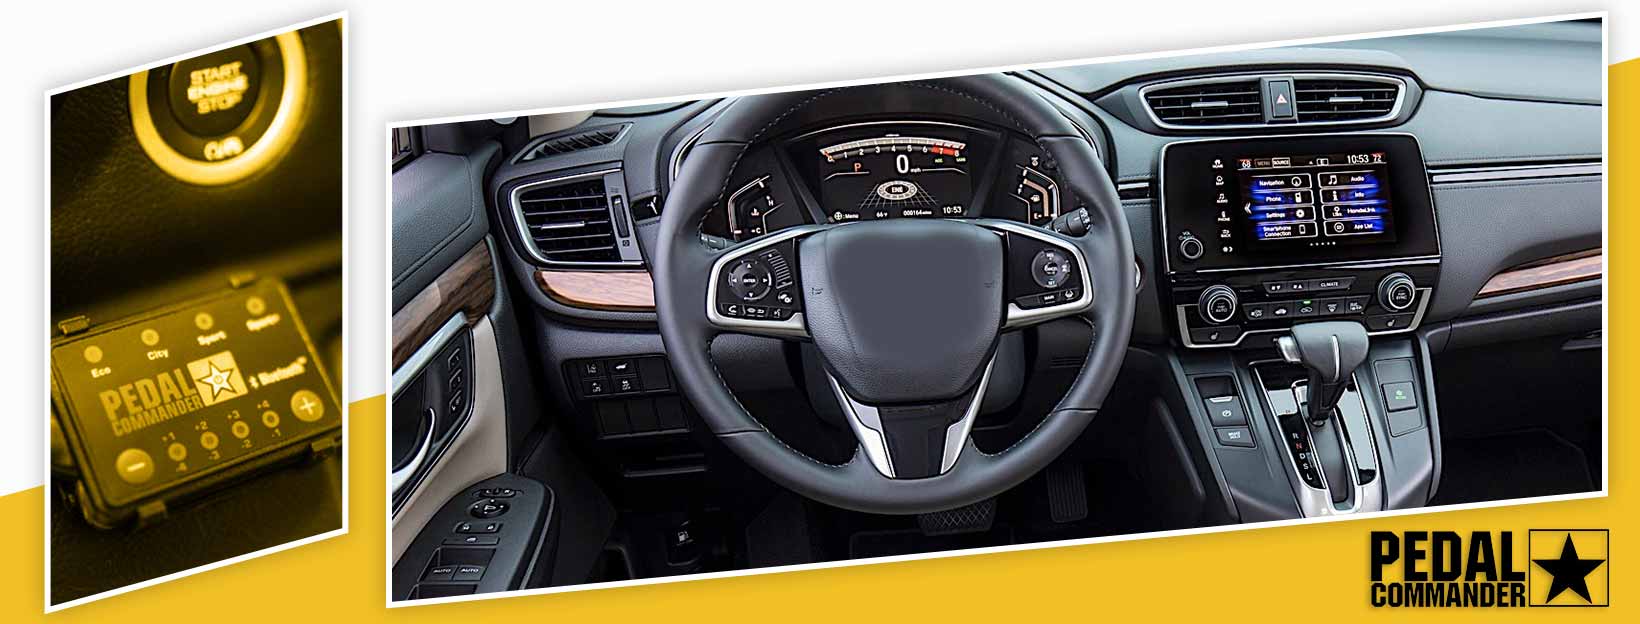 Pedal Commander for Honda CRZ - interior